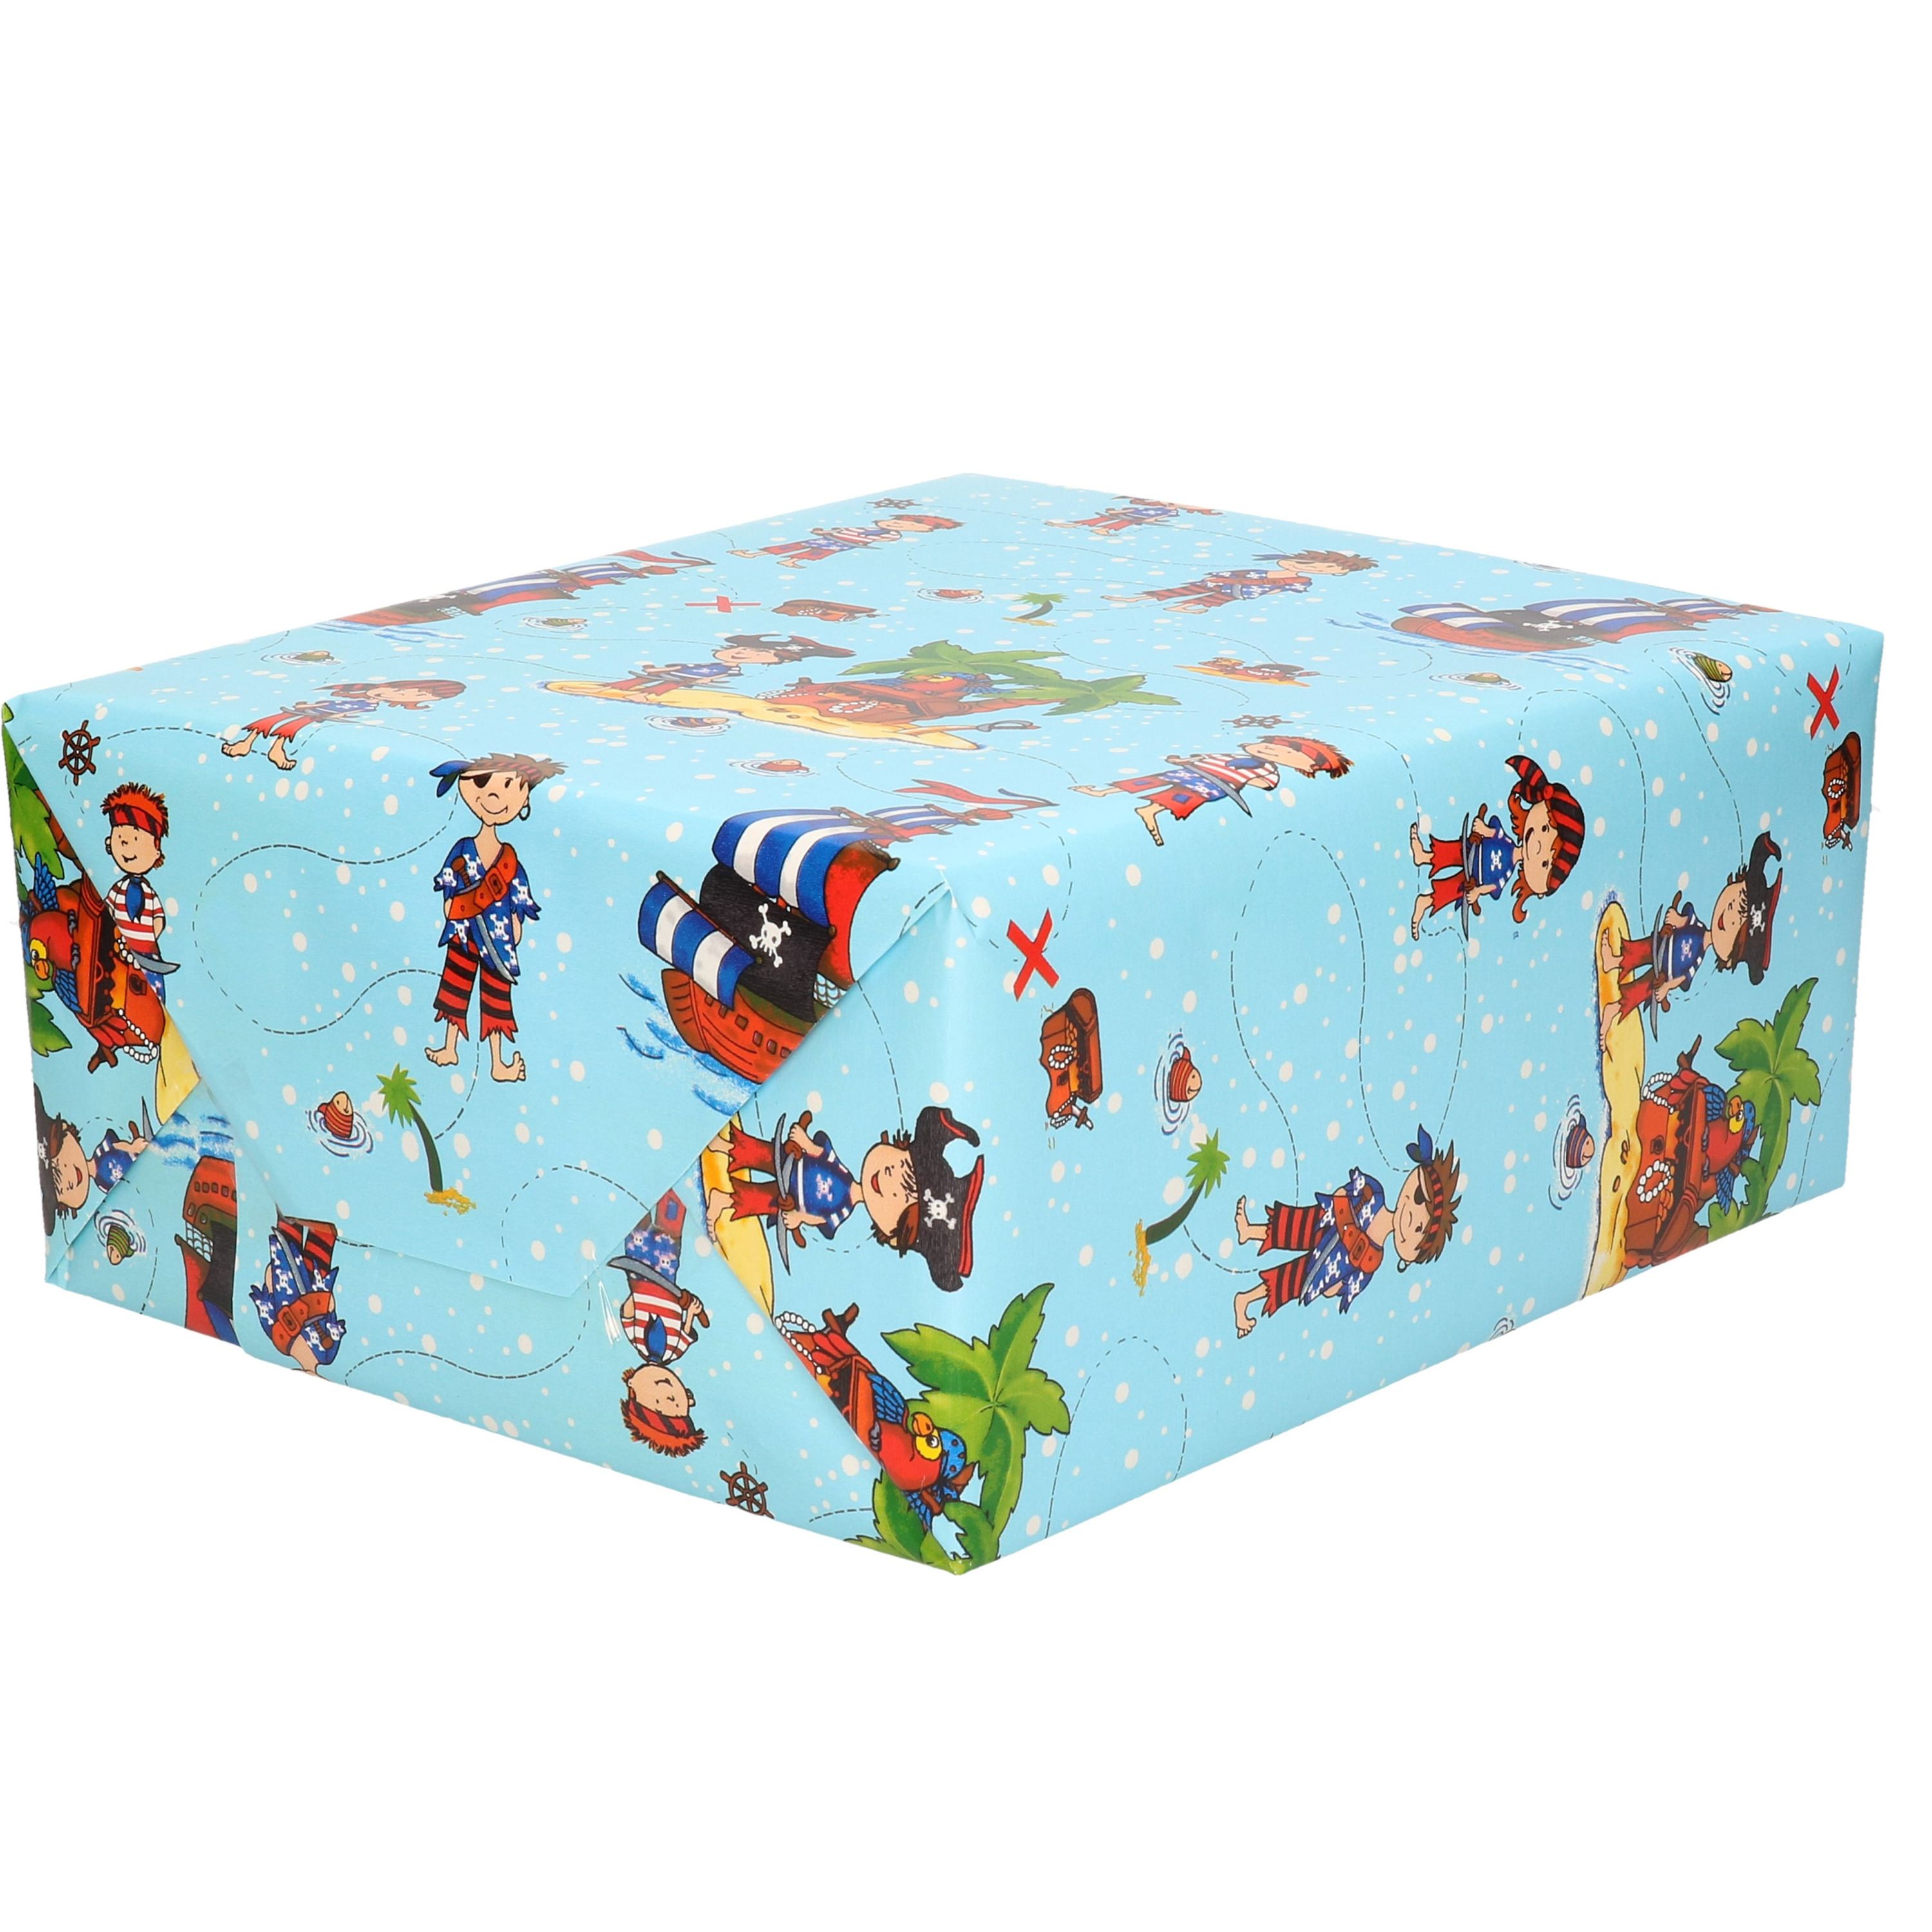 1x Inpakpapier kinder verjaardag blauw met piraten thema 200 x 70 cm